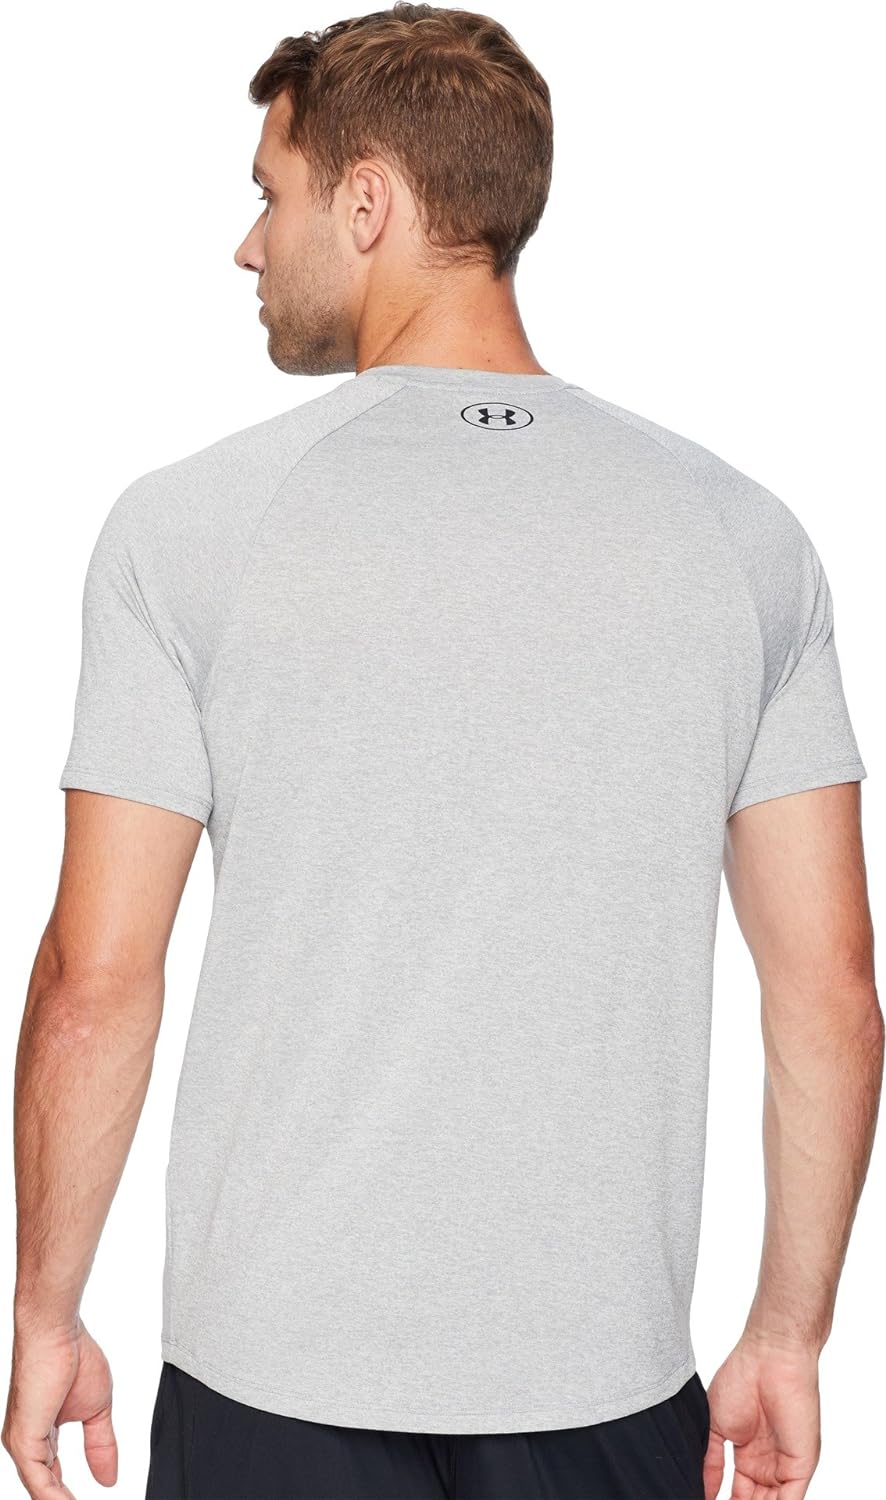 Under Armour Men's Tech 2.0 Short-sleeve T-shirt